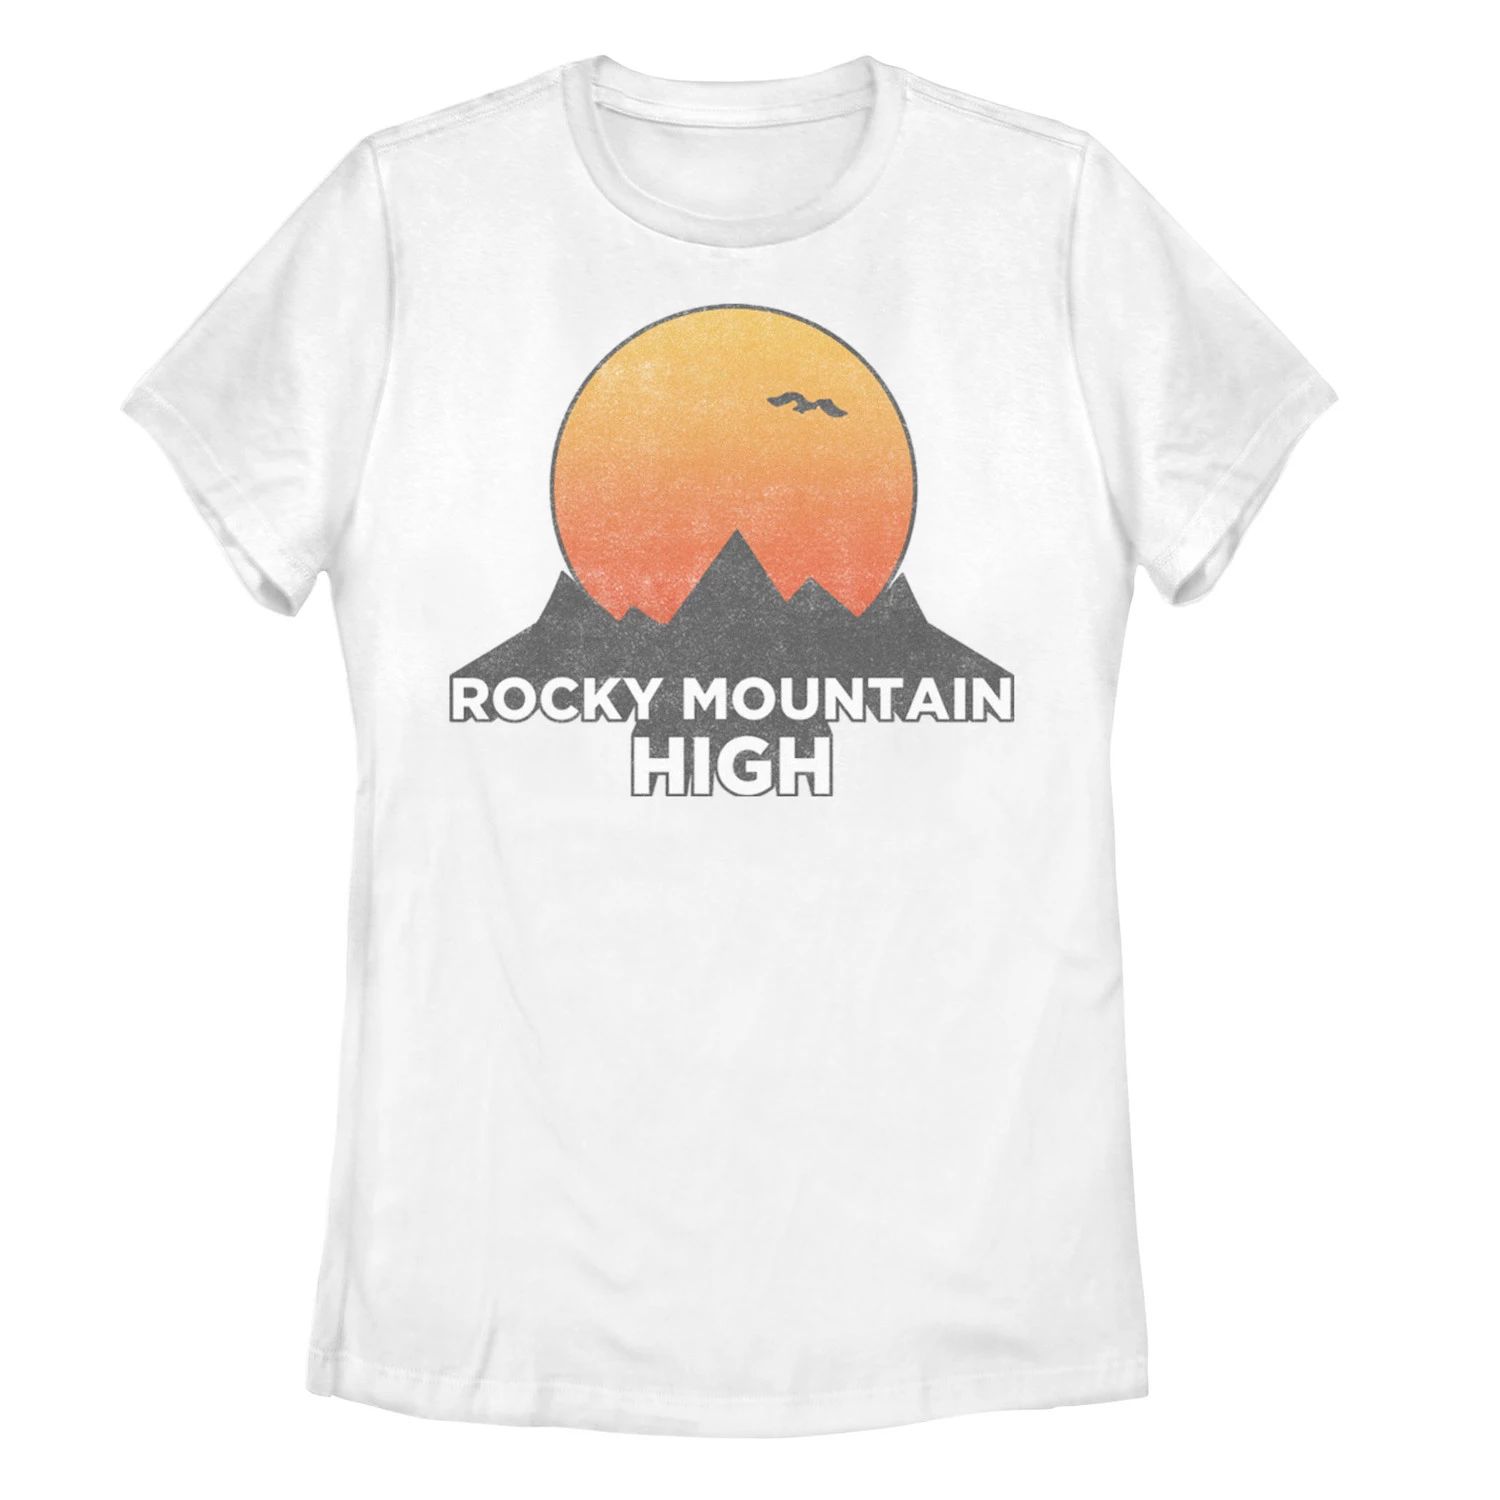 Детская футболка с рисунком Rocky Mountain